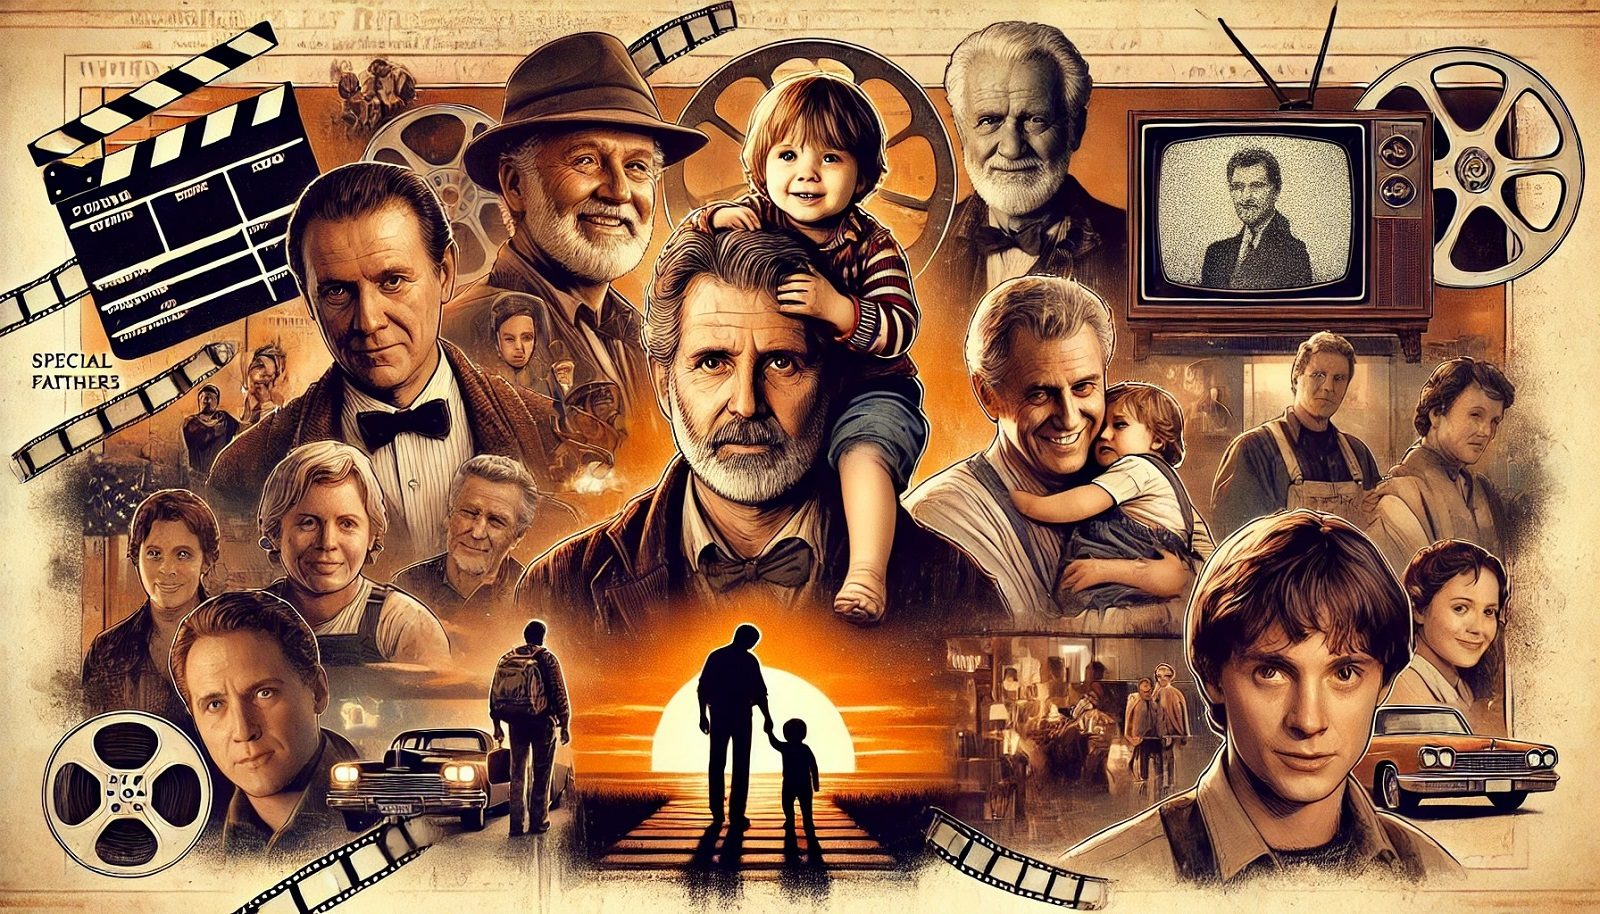 Väter auf der Leinwand – 8 besondere Film- und Serienpapas als Vorbilder